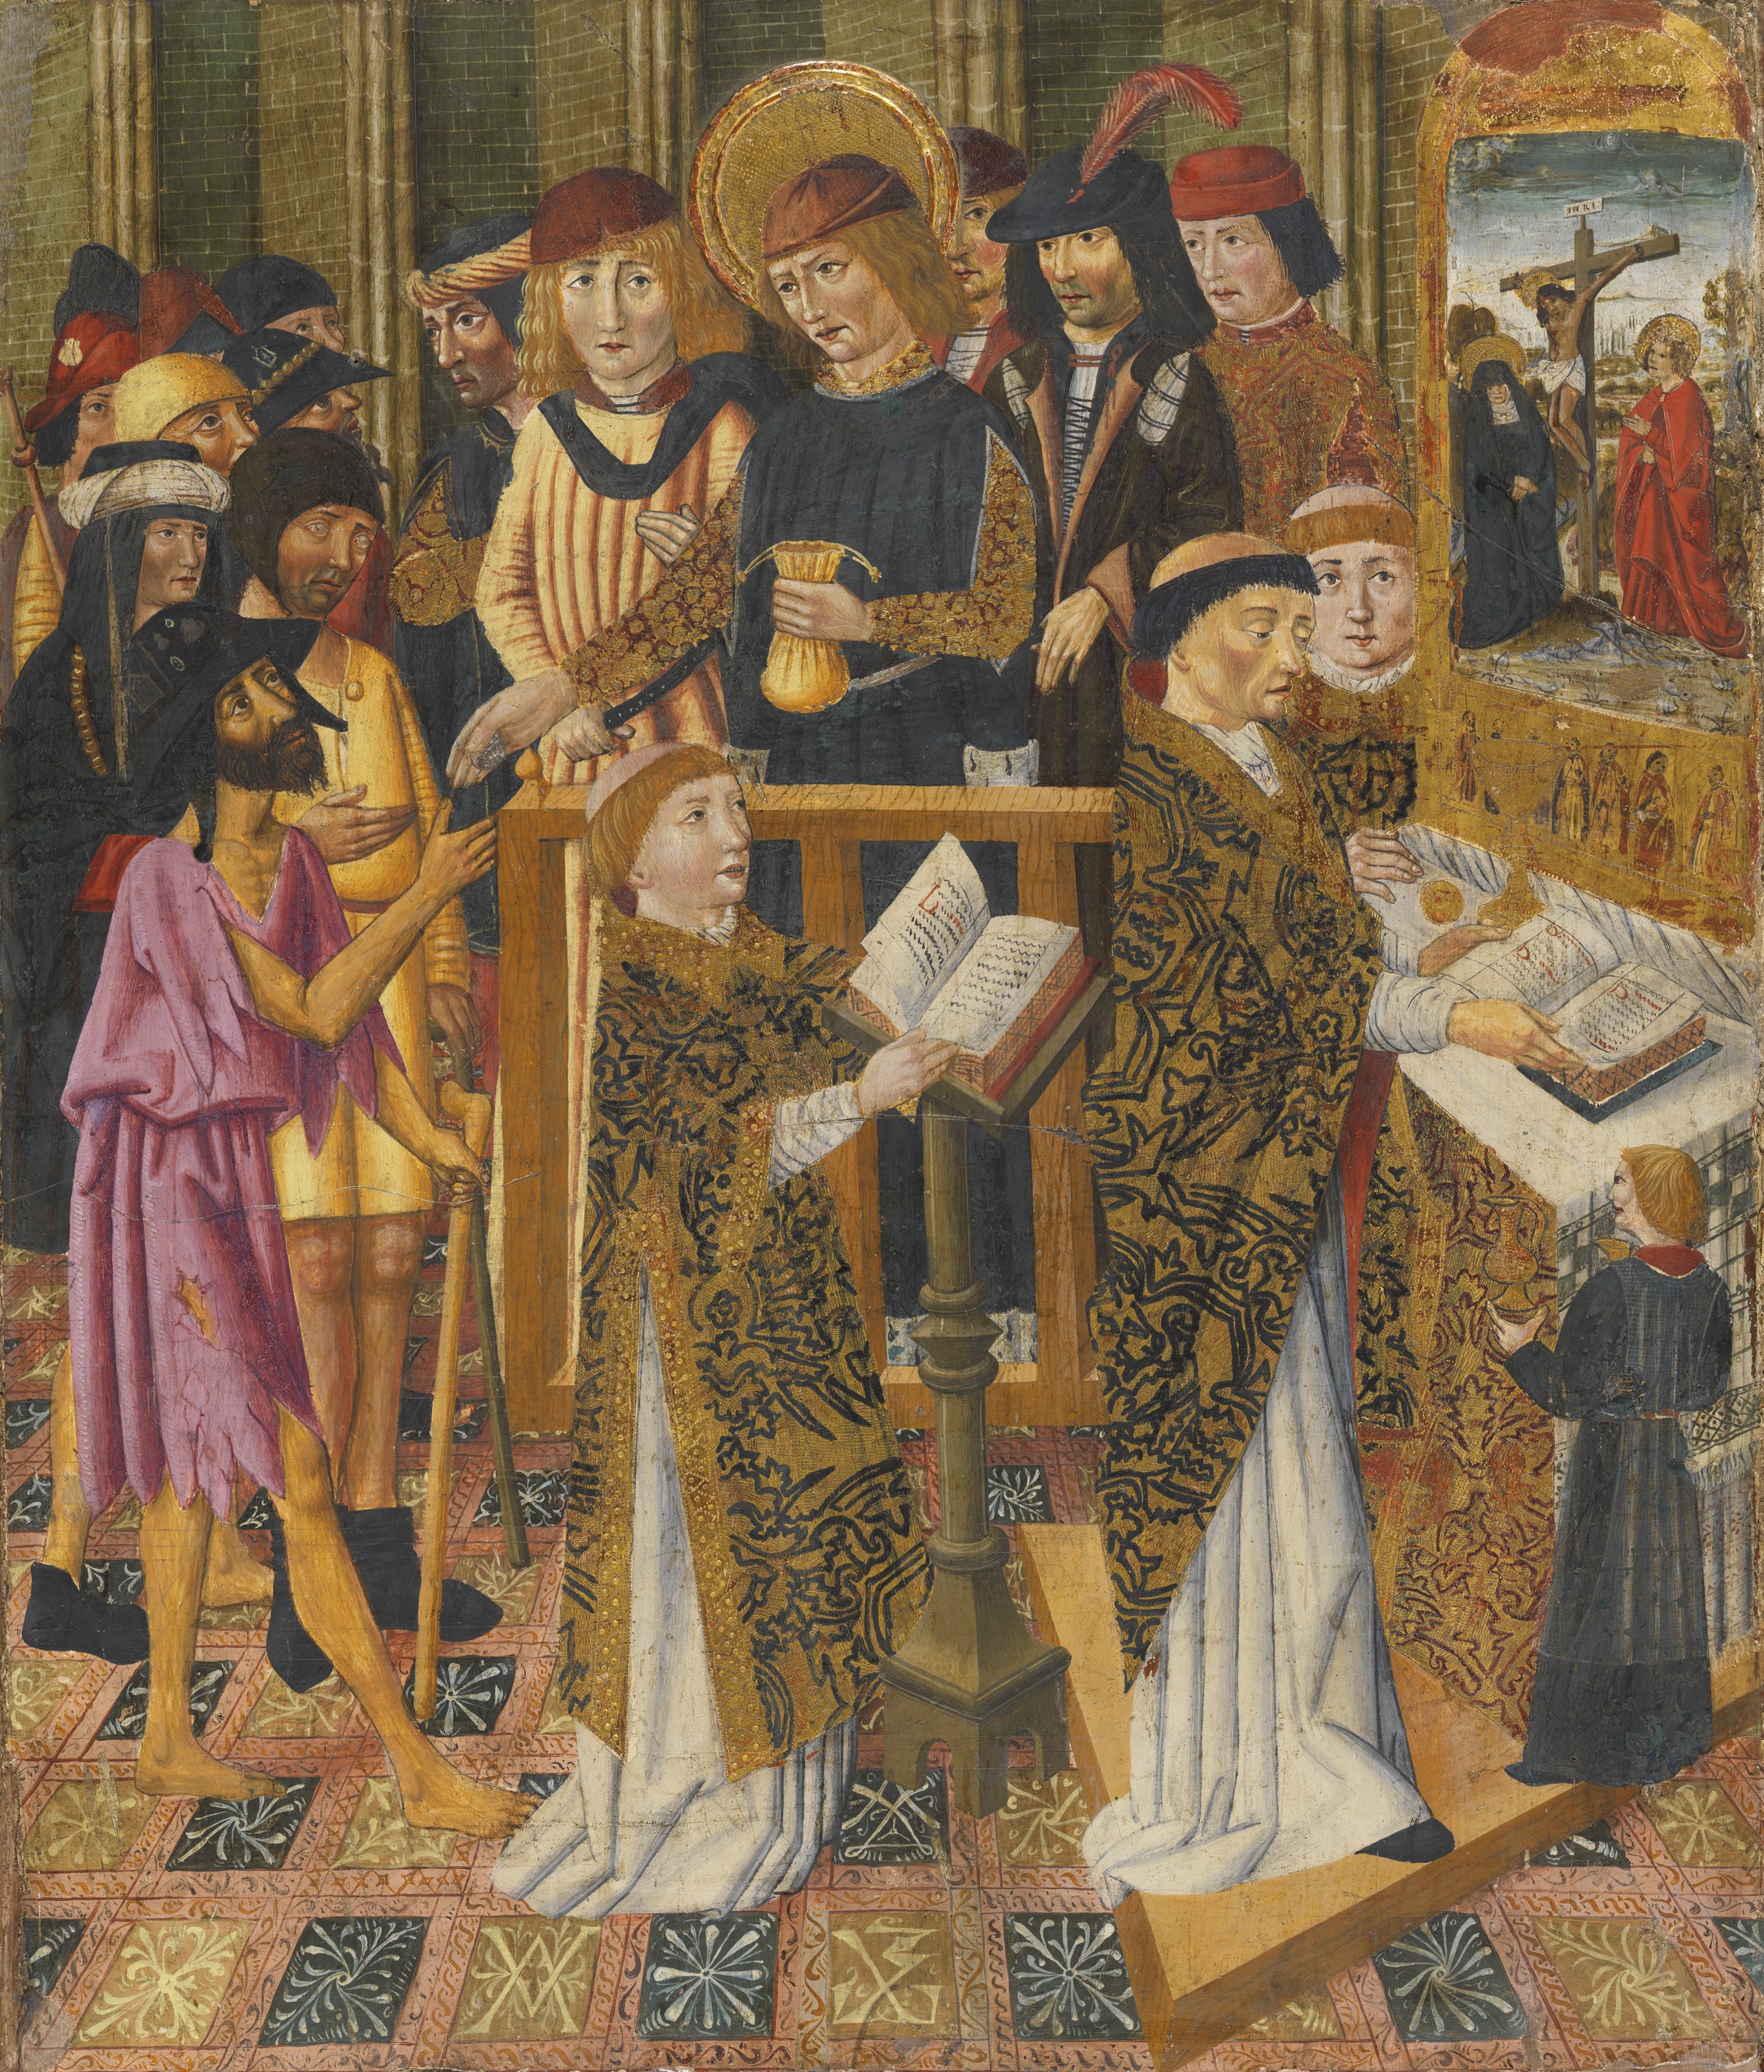  Pilgrims' Mass. Misa de peregrinos, c.1450-1500